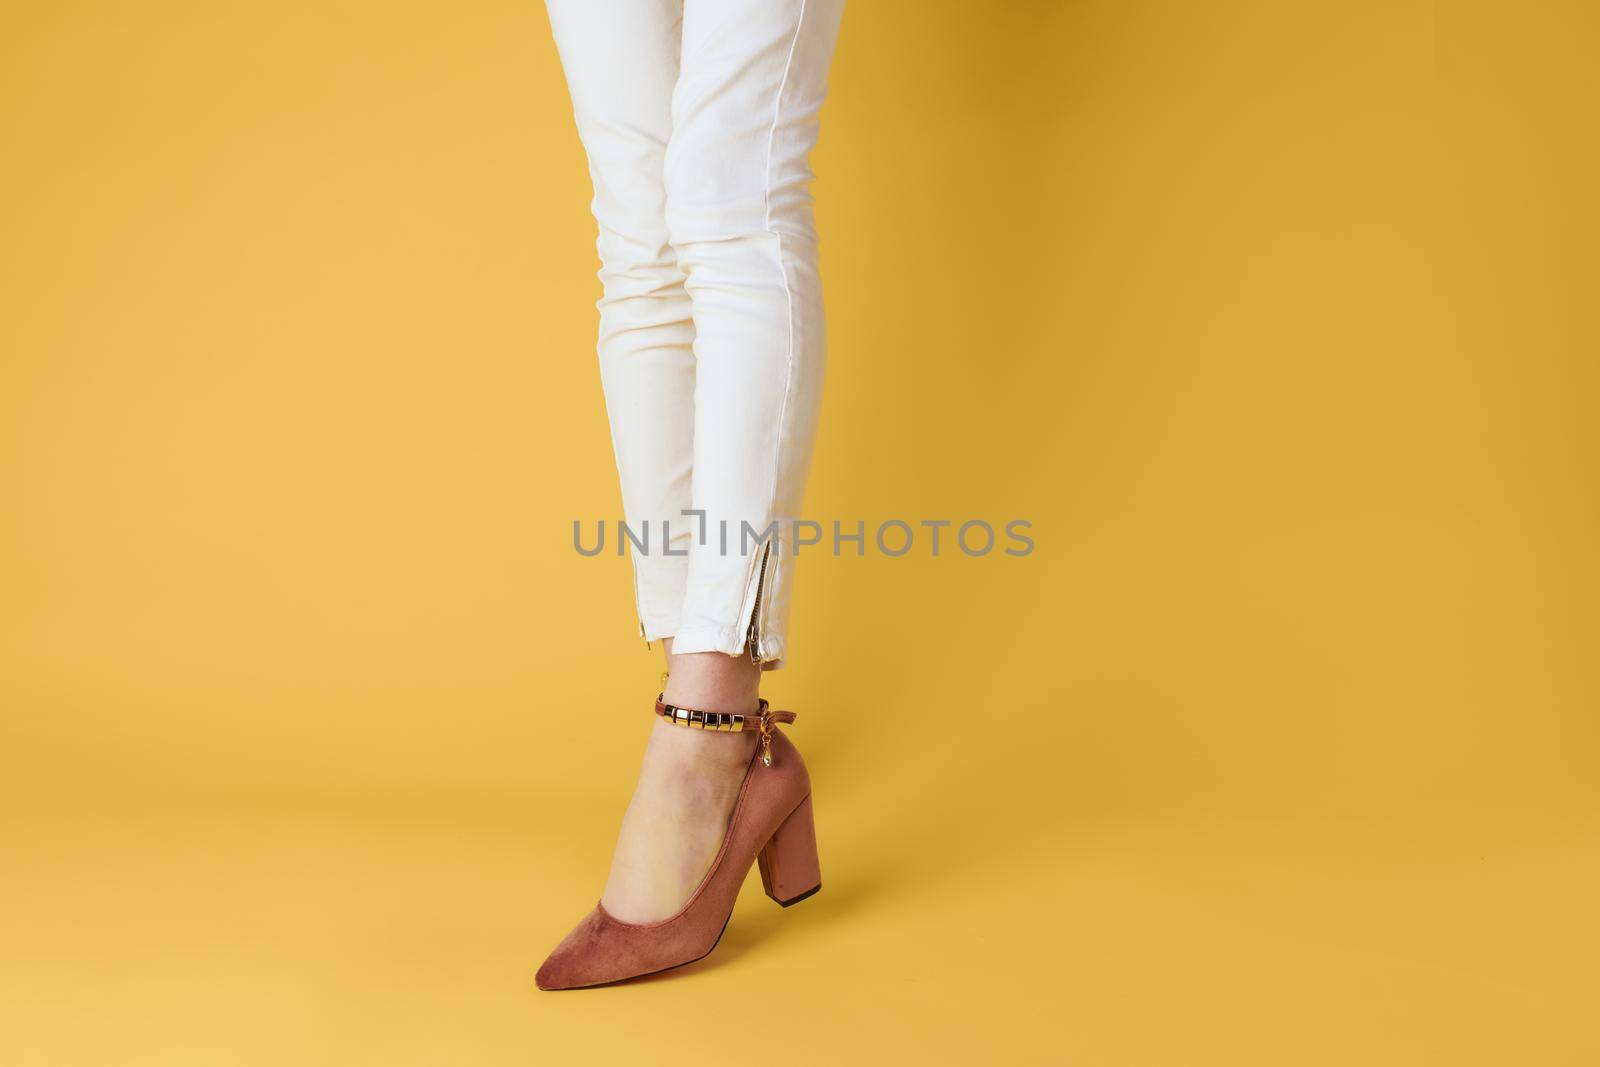 Female feet fashionable shoes luxury yellow background elegant style. High quality photo